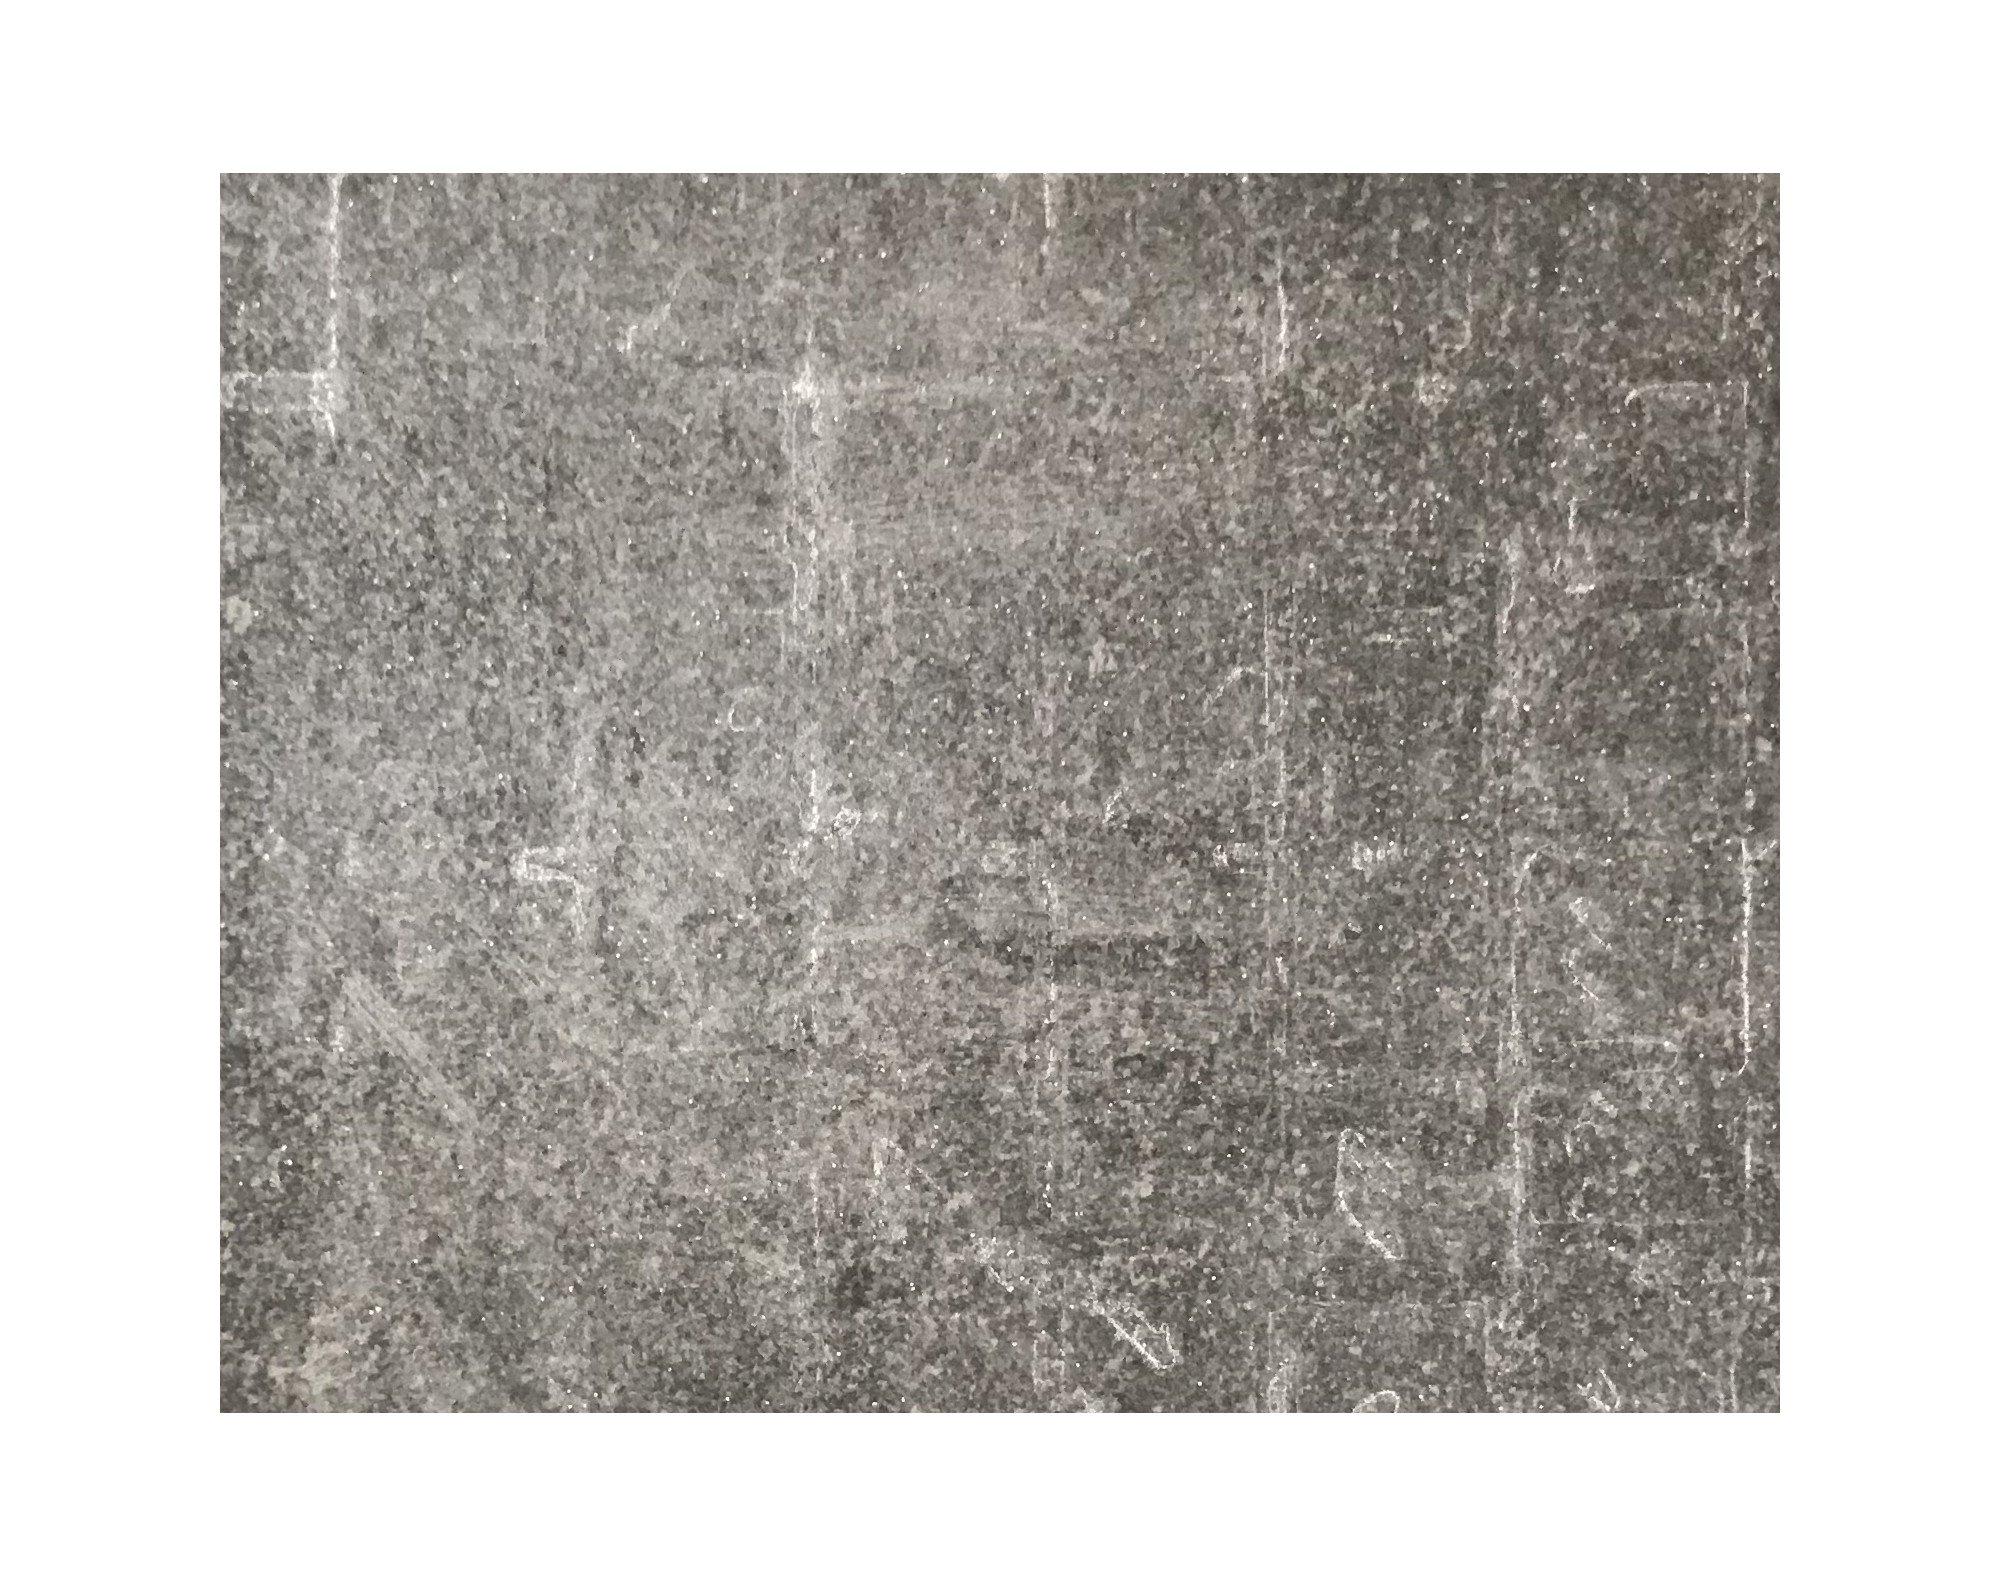 Harmo roc maranelloset, keramiek-serie, ovaal d: 5,00mx10,30, zand zwart , keramisch porselein